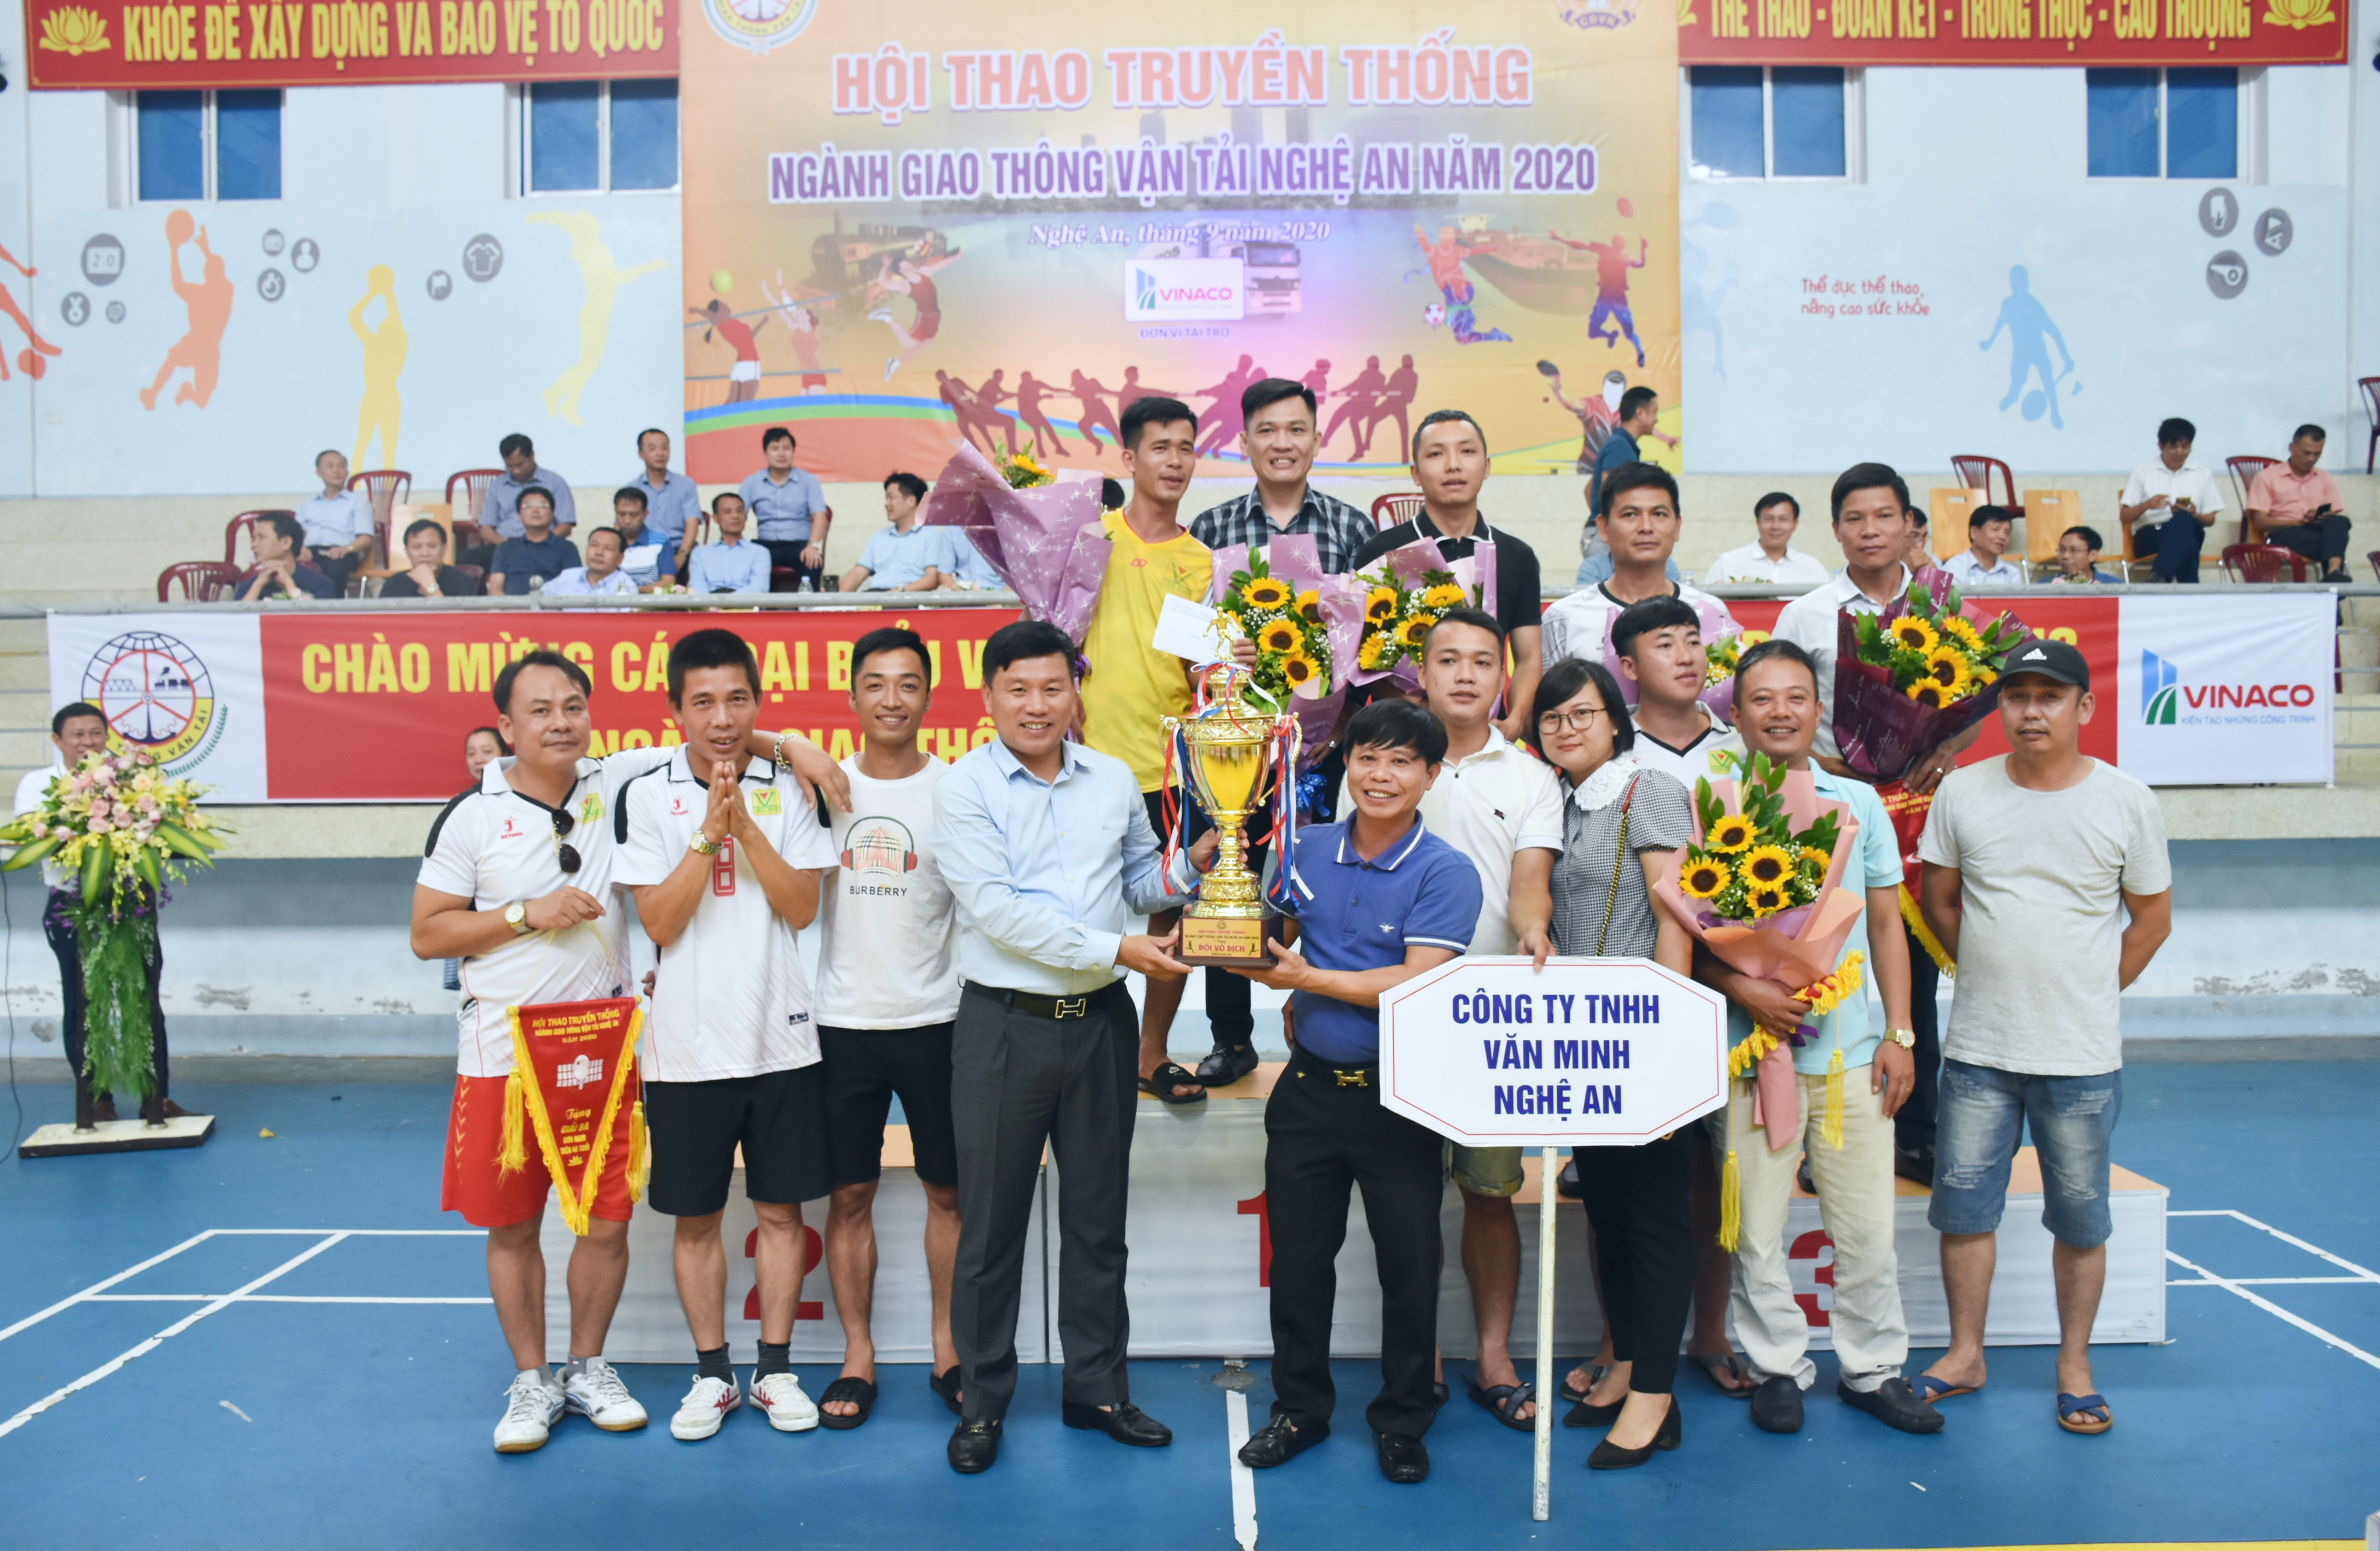 Giám đốc Sở Giao thông vận tải Nghệ An Hoàng Phú Hiền trao cúp giải nhất môn bóng đá Nam cho đơn vị Công ty Văn Minh. Ảnh: Thanh Lê